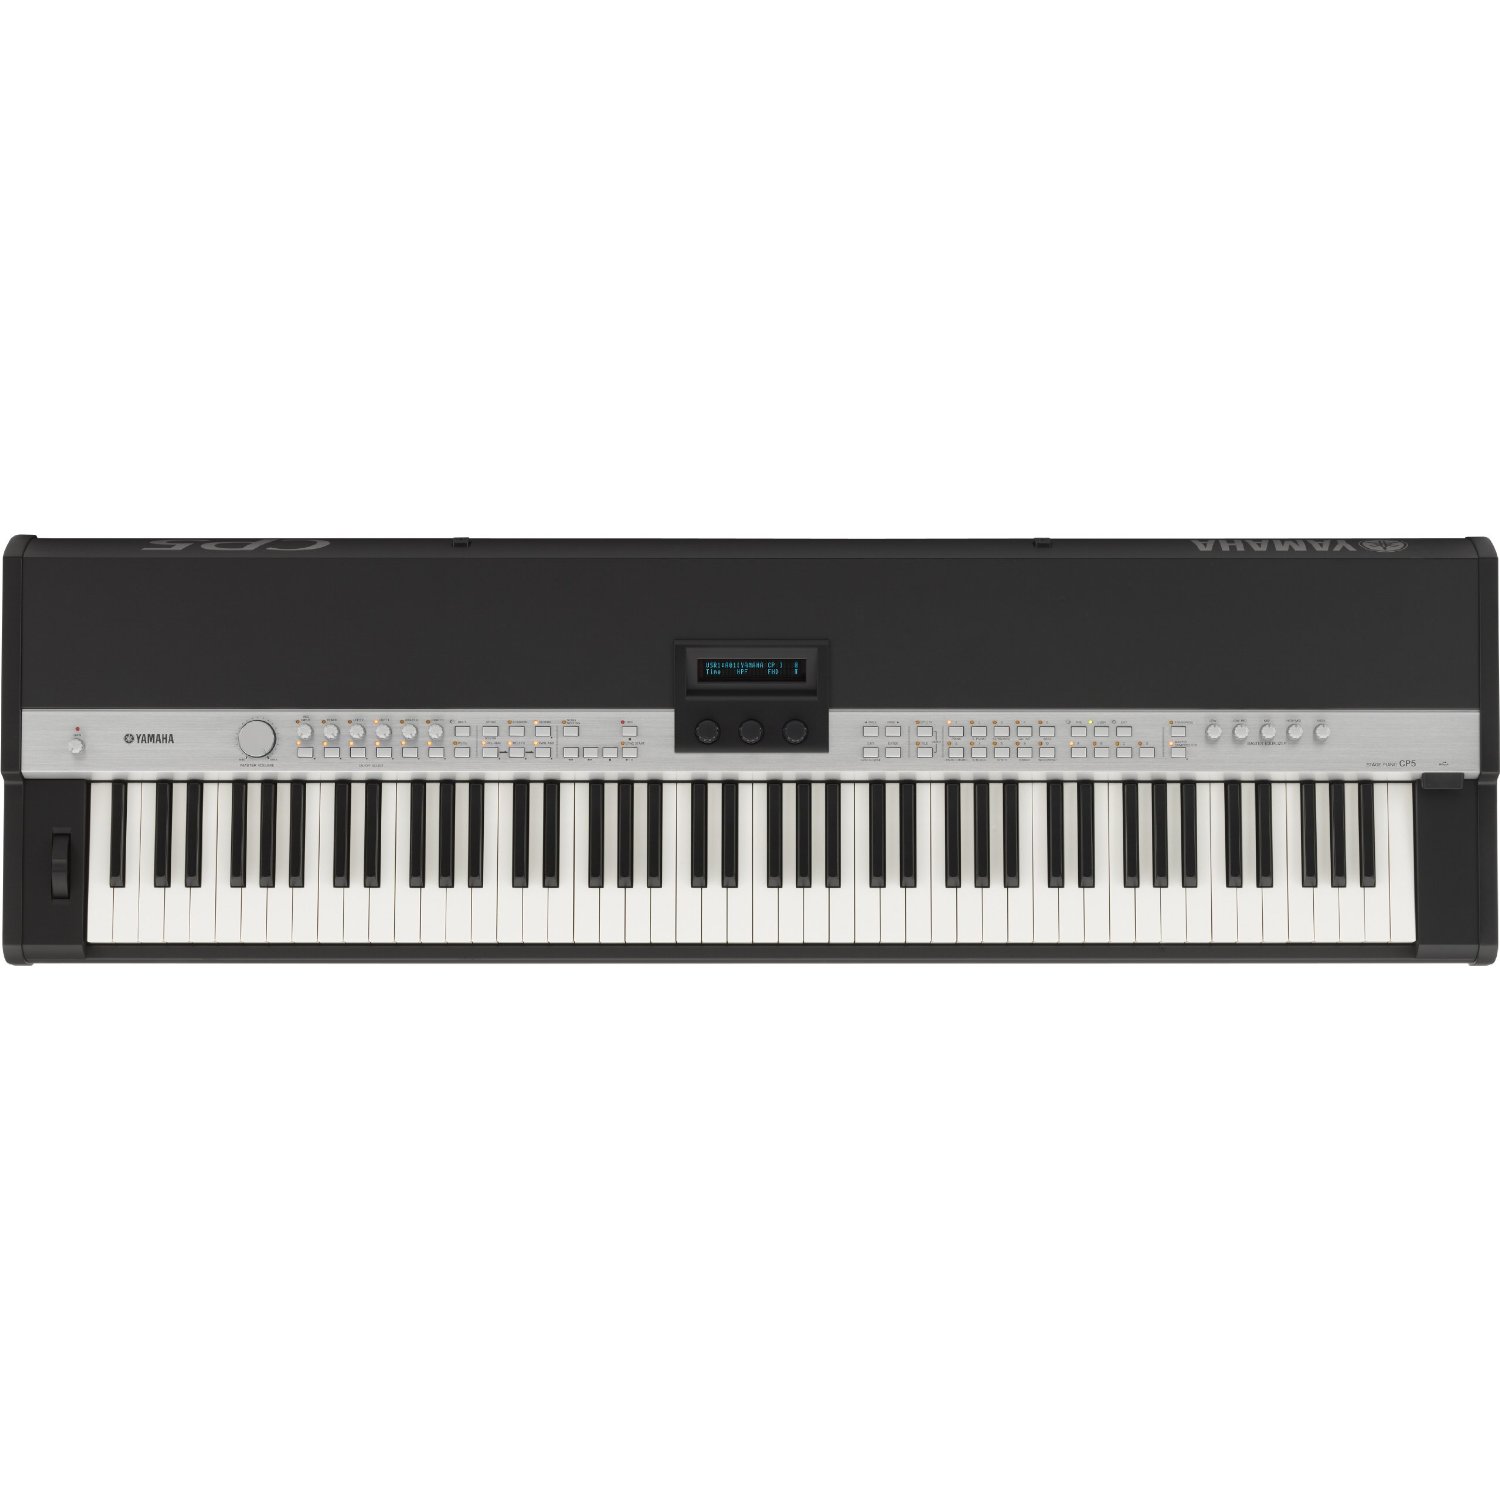 雅馬哈 Yamaha CP5 舞台電鋼琴  $2,209.99